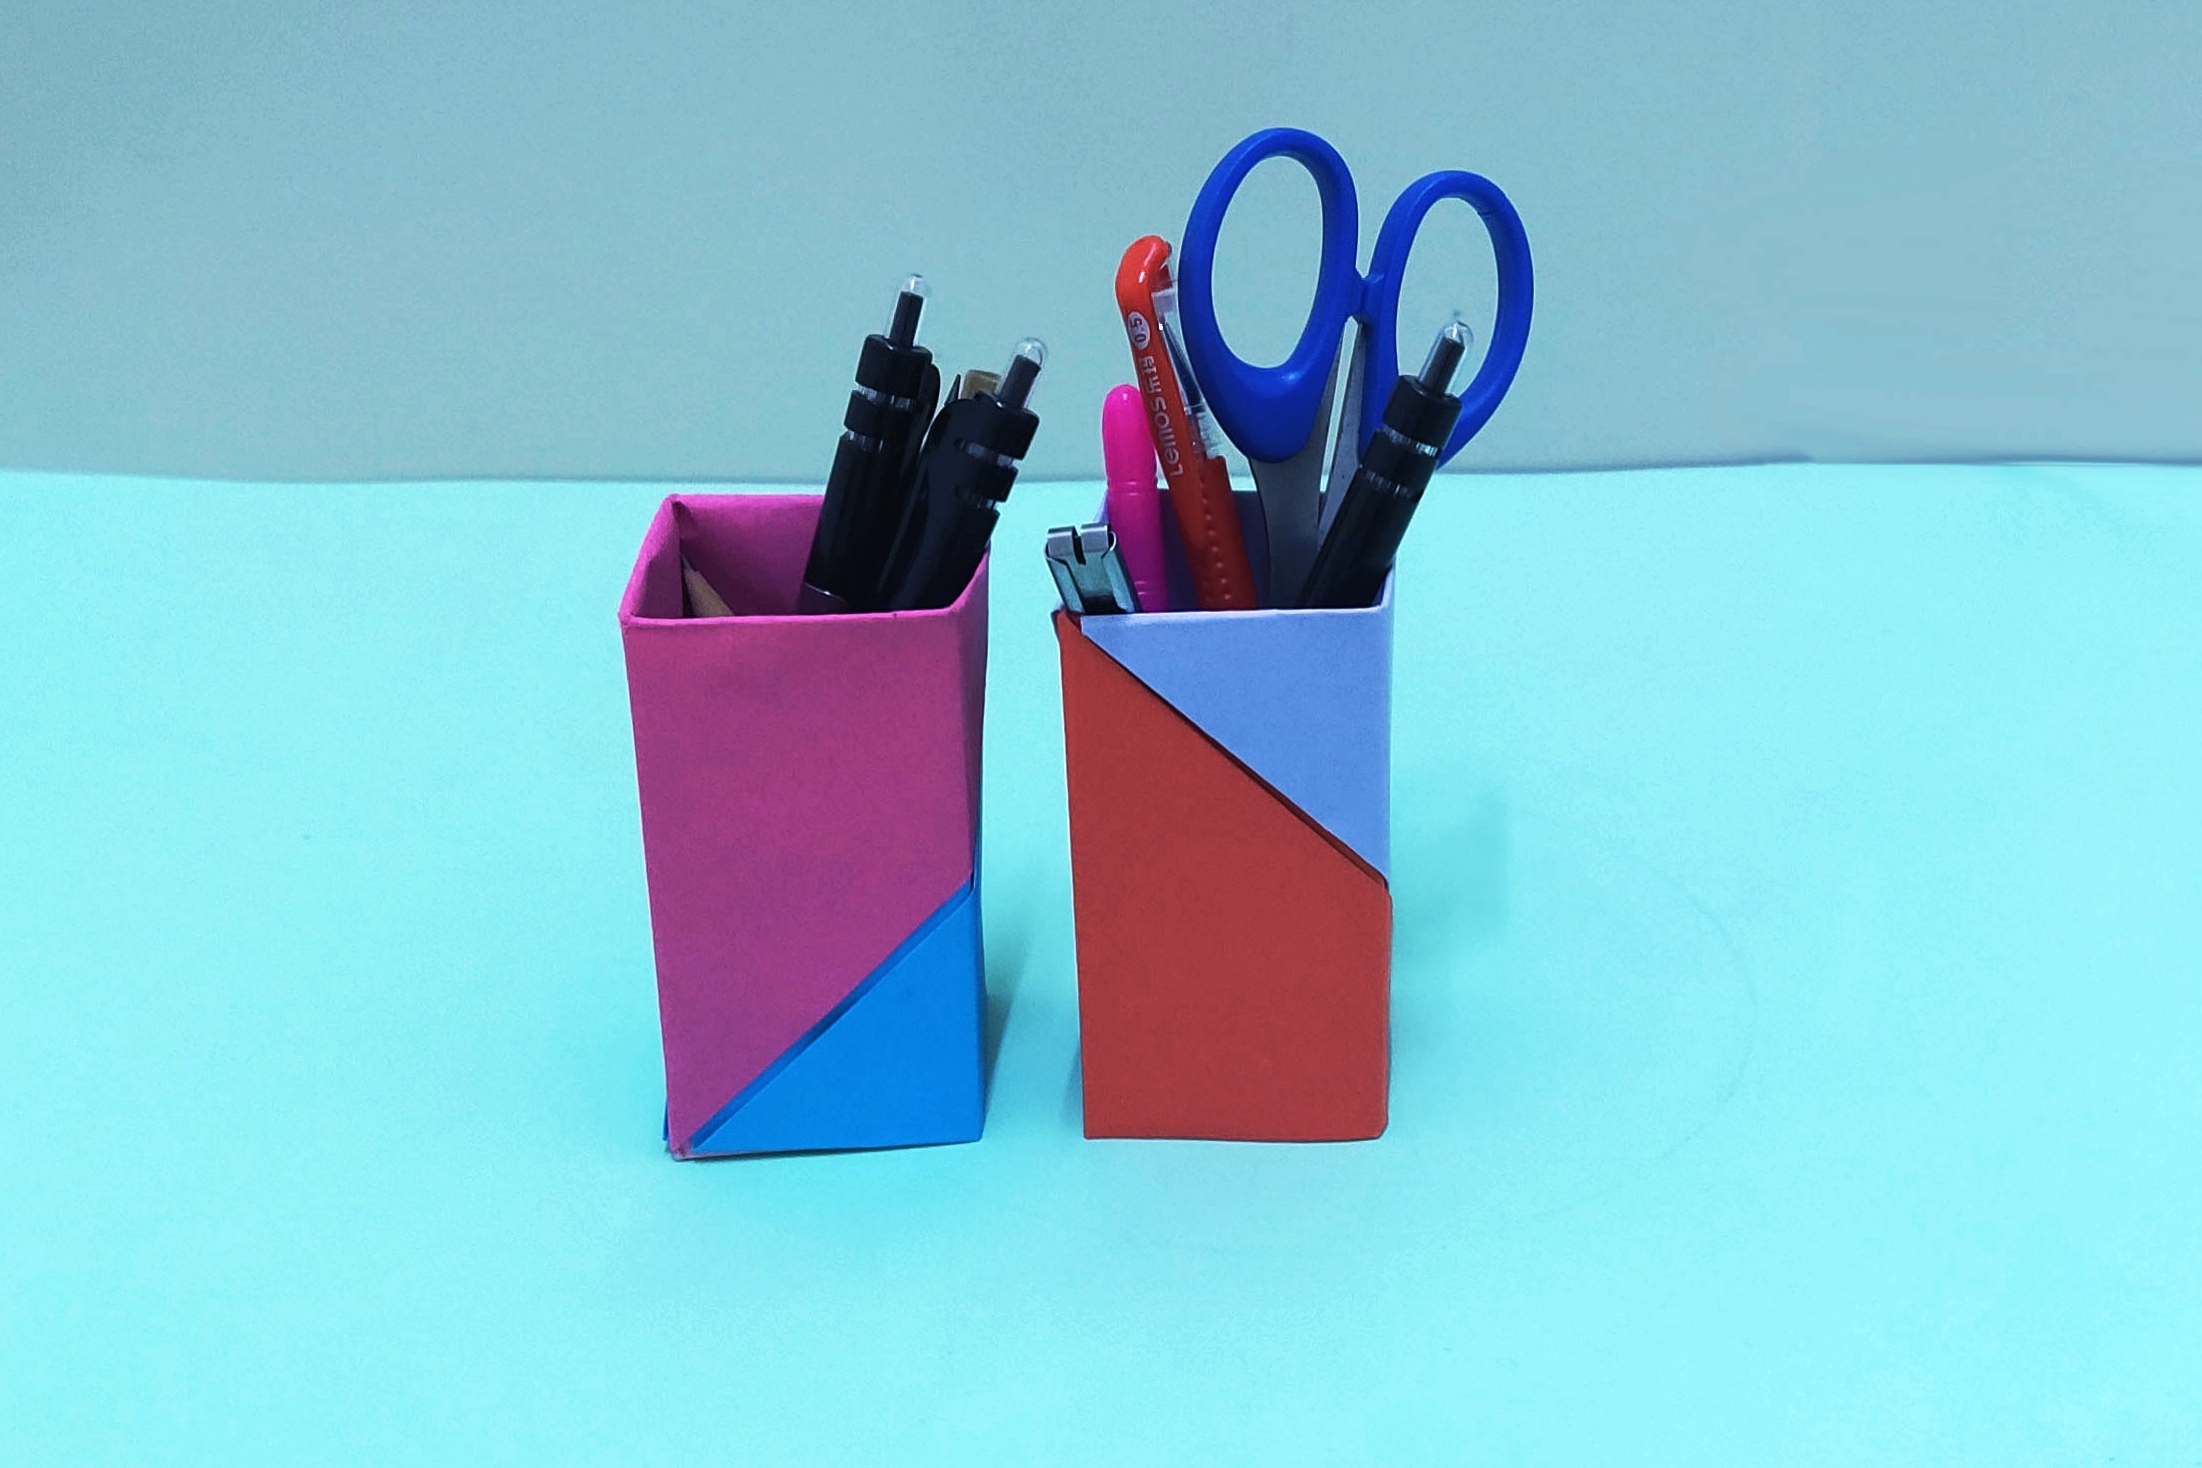 创意手工制作:教你用两张彩纸折出精美的笔筒(第一种)